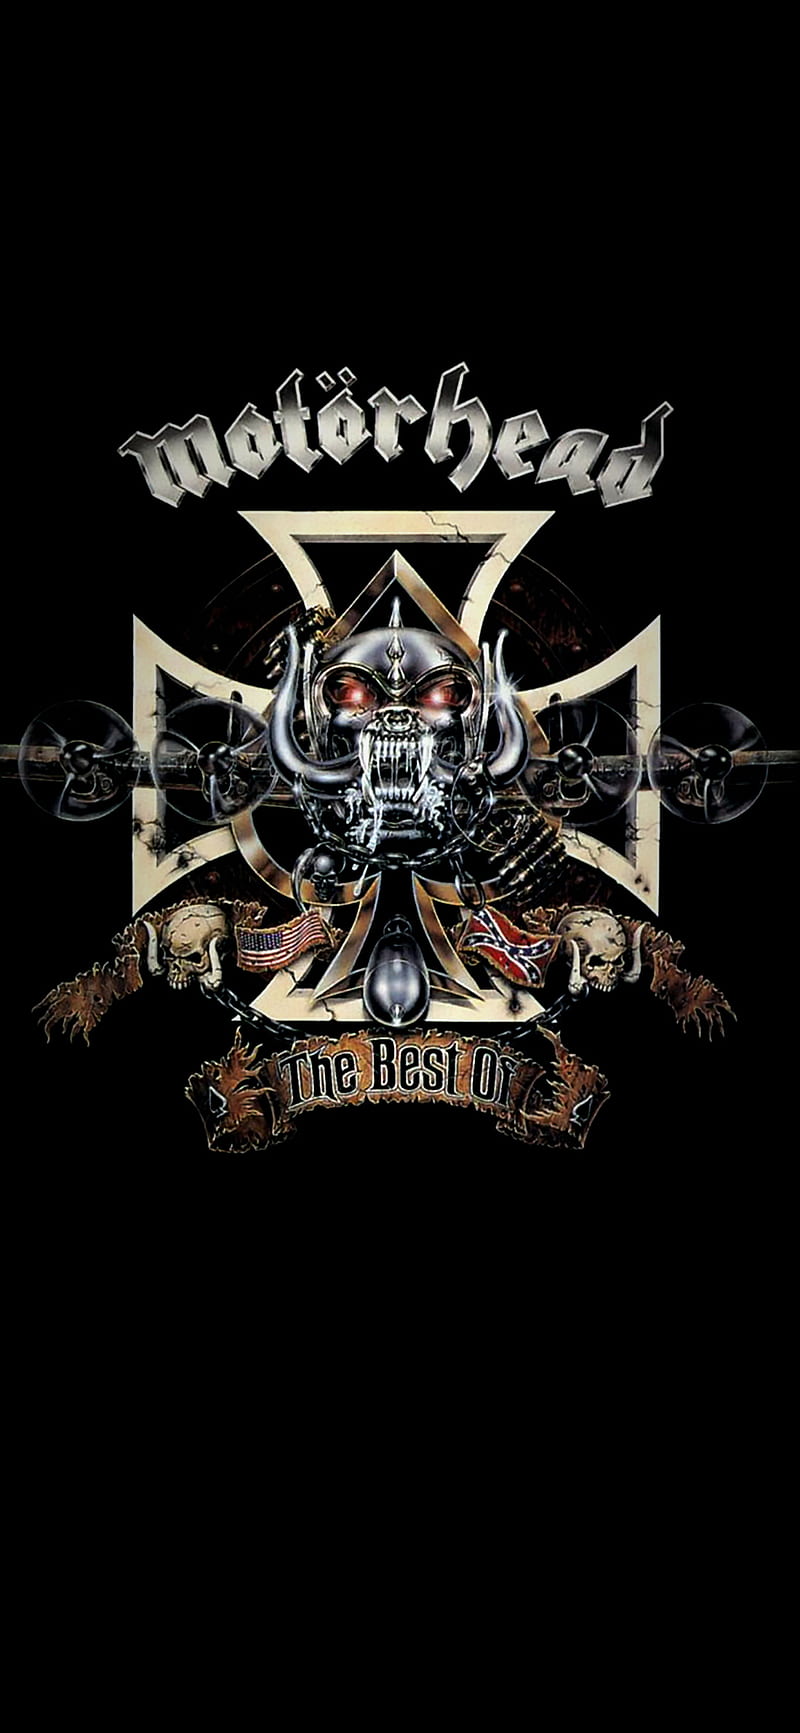 Wallpaper music background group logo metal rock heavy metal  Motorhead hard rock hard rock rock n roll Warpig Motörhead Lemmy  Kilmister Lemmy Motorhead images for desktop section музыка  download